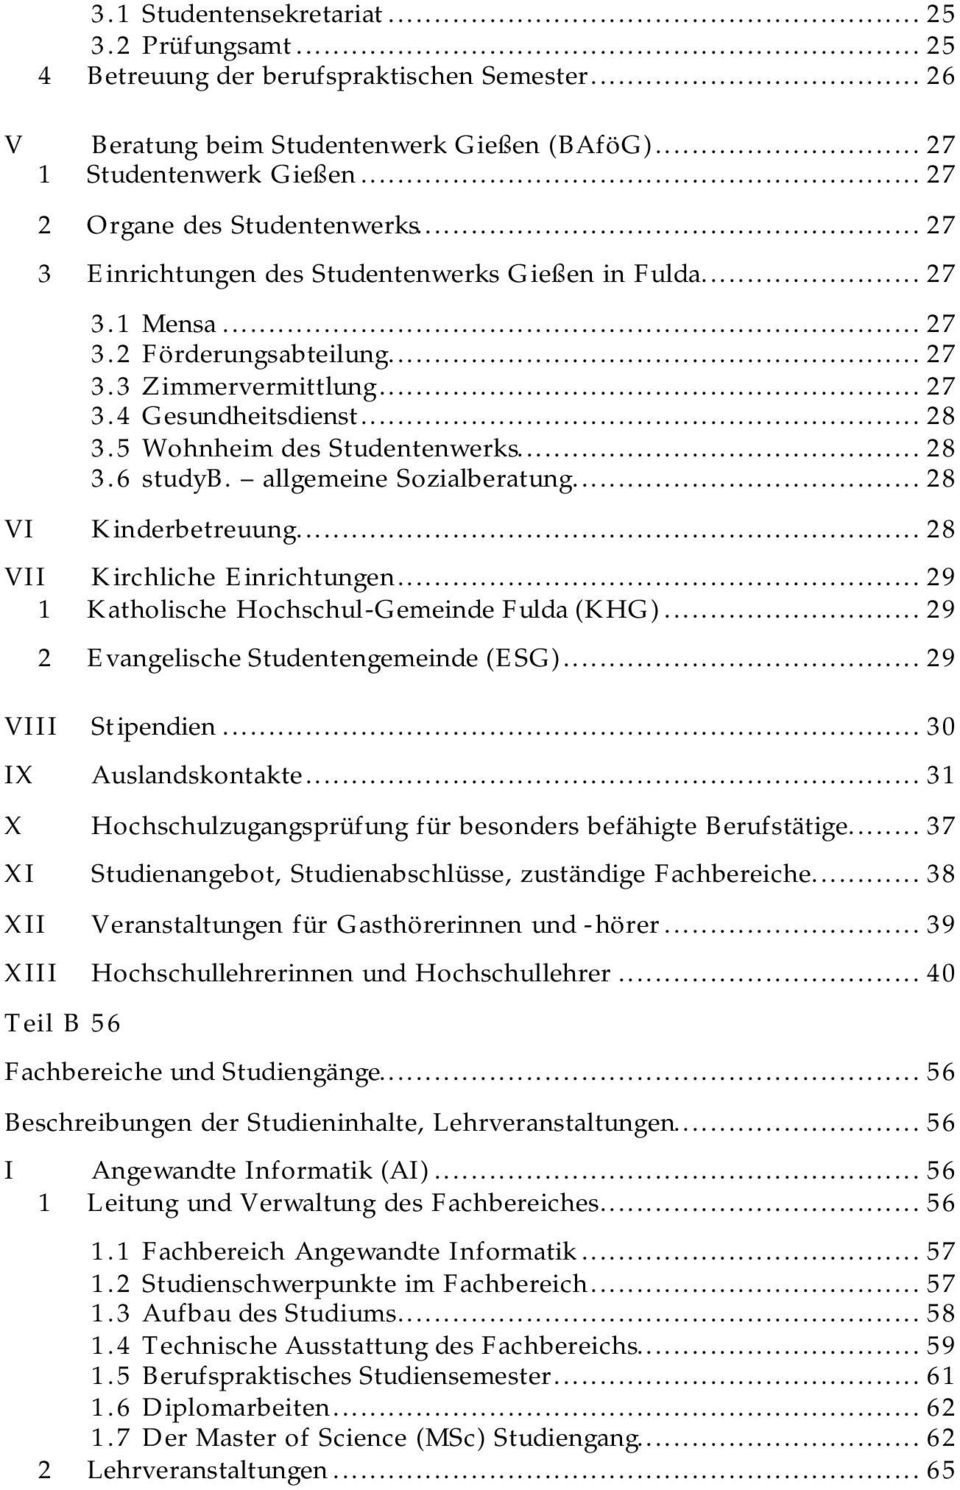 5 Wohnheim des Studentenwerks... 28 3.6 studyb. allgemeine Sozialberatung... 28 VI Kinderbetreuung... 28 VII Kirchliche Einrichtungen... 29 1 Katholische Hochschul-Gemeinde Fulda (KHG).